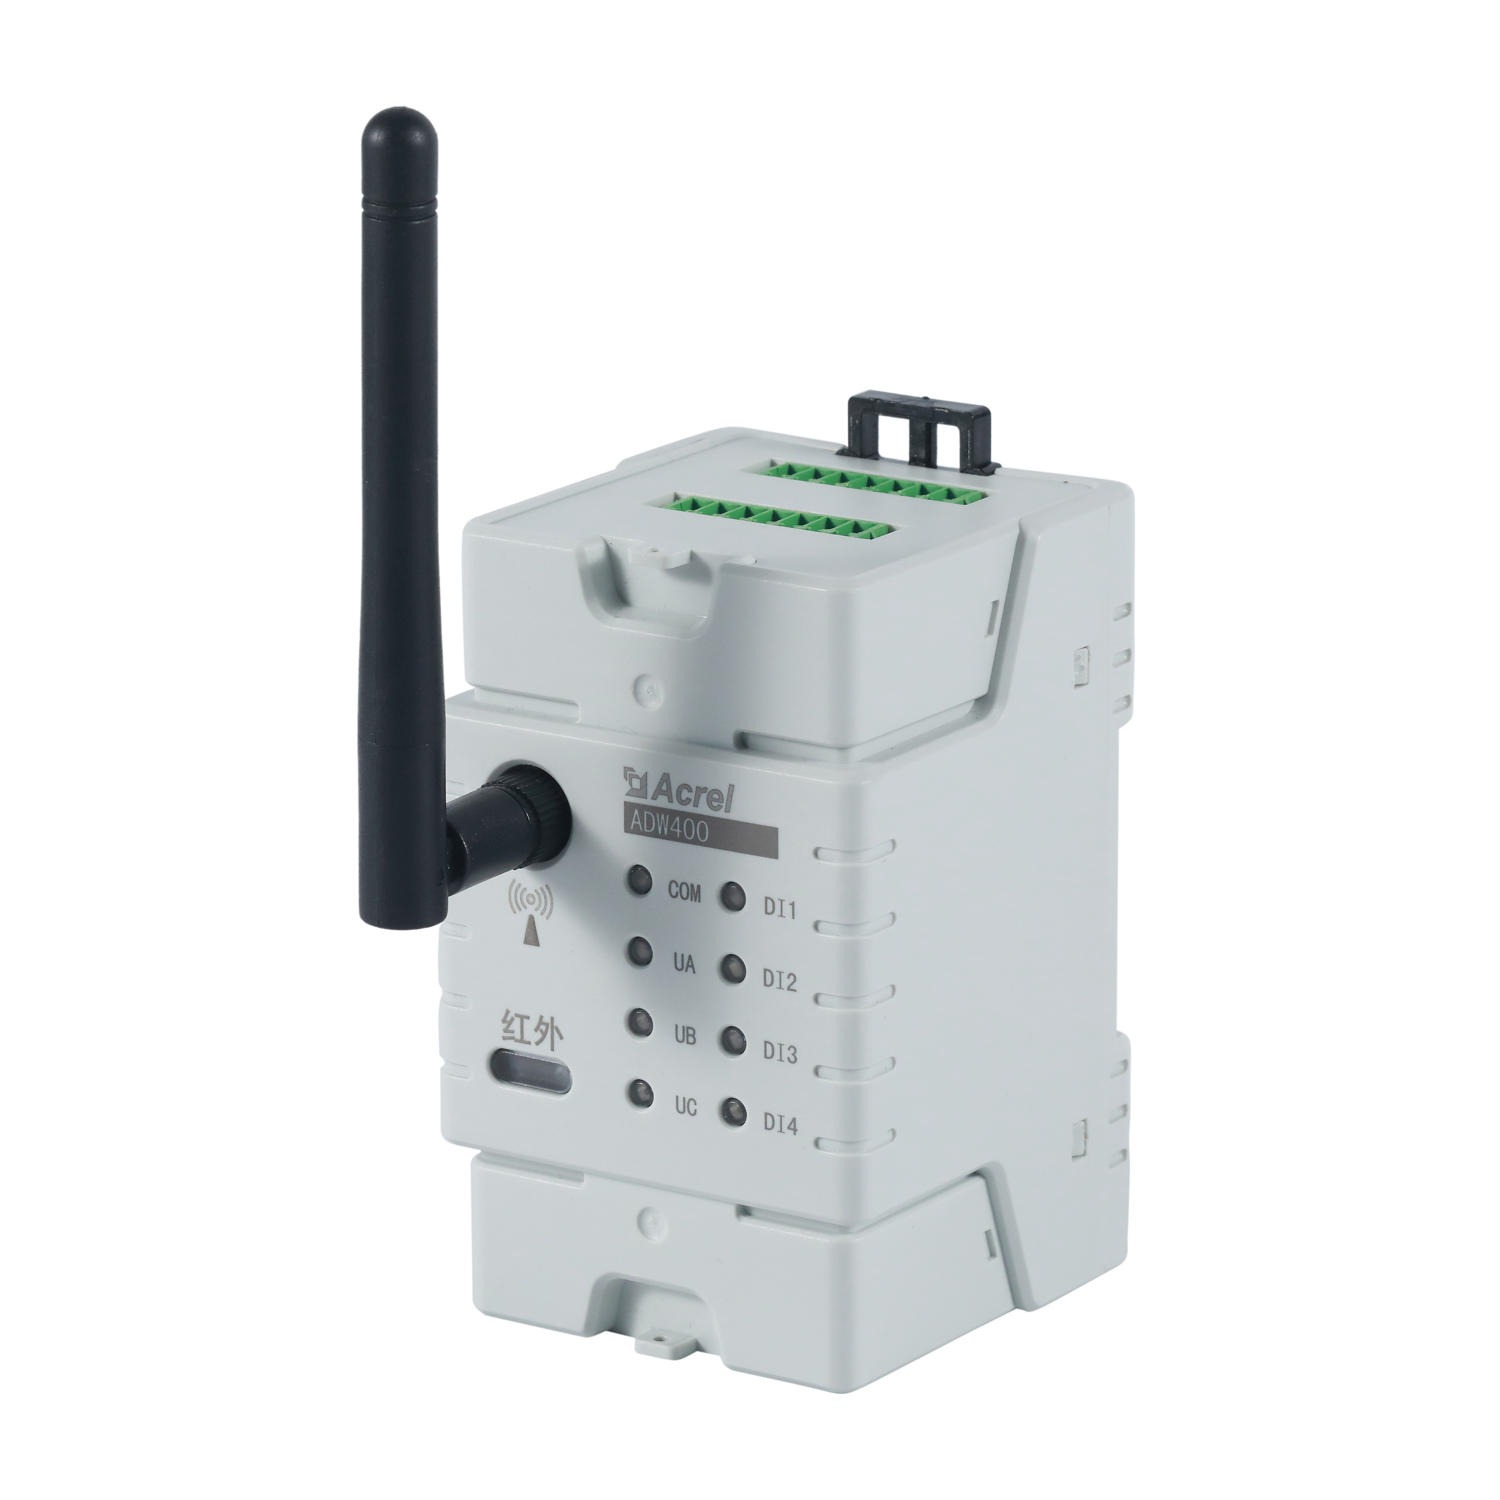 安科瑞 ADW400-D16-4S 4路三相 方便用户集抄 管理 监测 环保用电监测装置